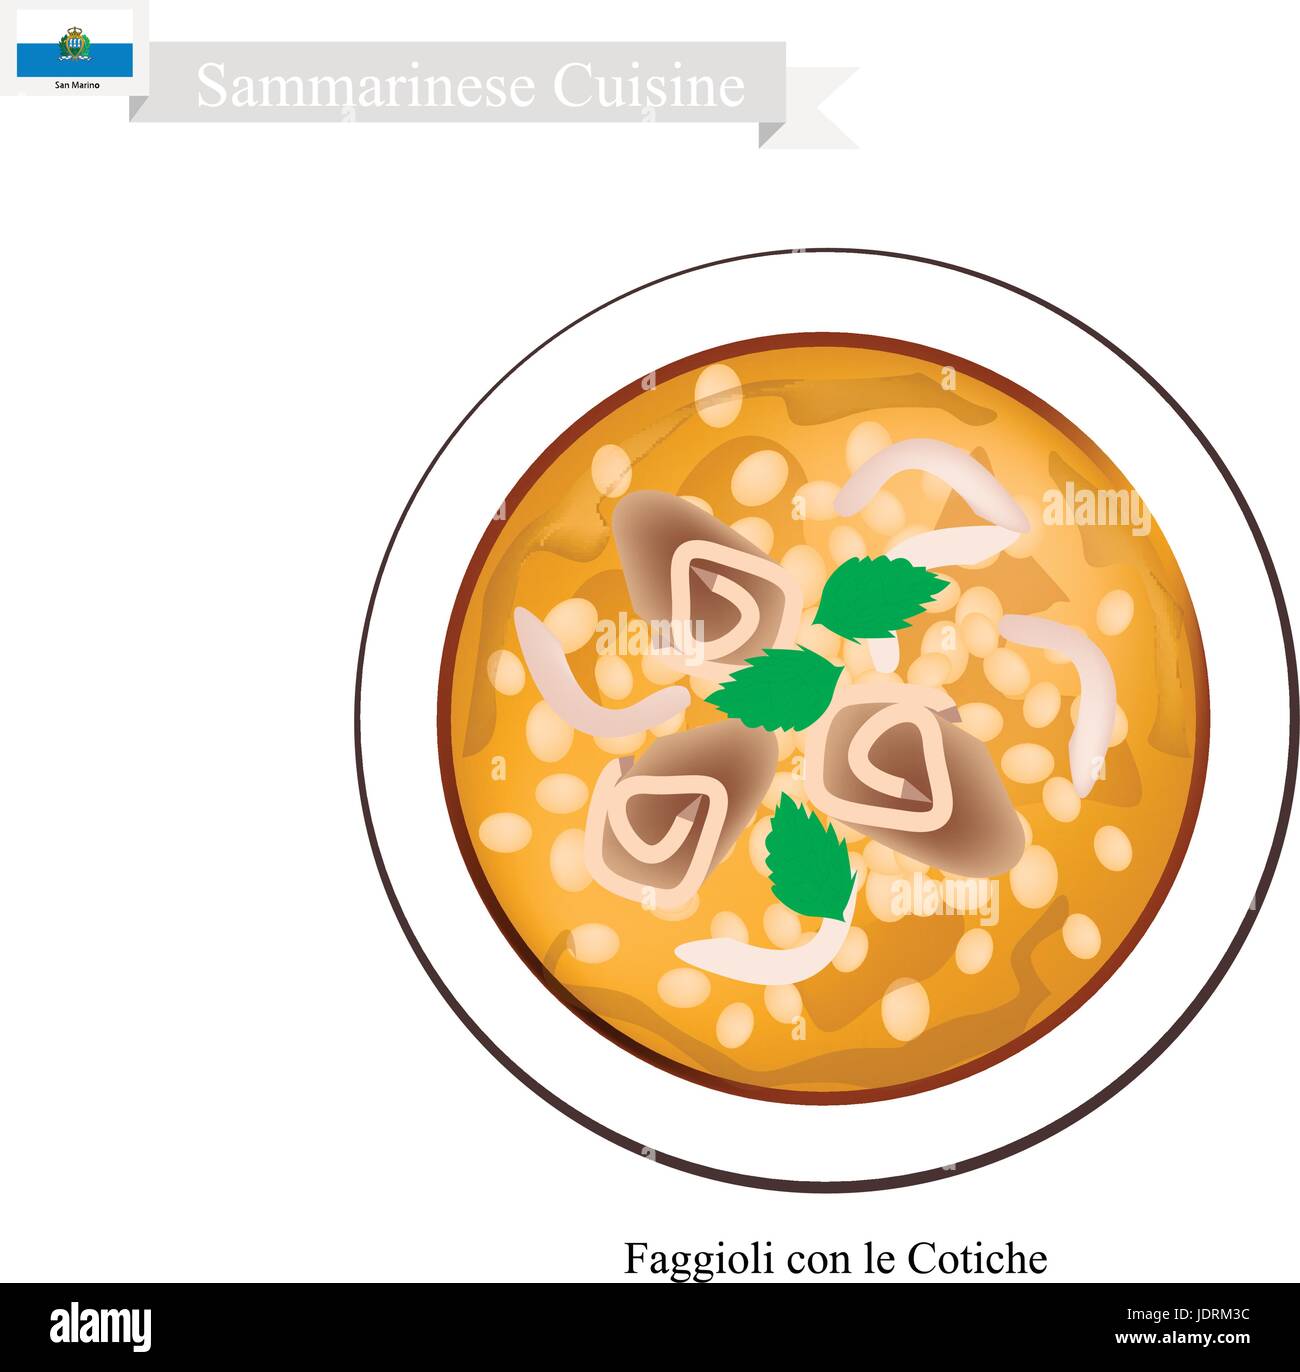 Sammarinese Küche, Faggioli con le Cotiche oder traditionelle Suppe gebildet von Bohnen und Speck serviert in der Regel zu Weihnachten. Einer der bekannteste Gericht der Stock Vektor